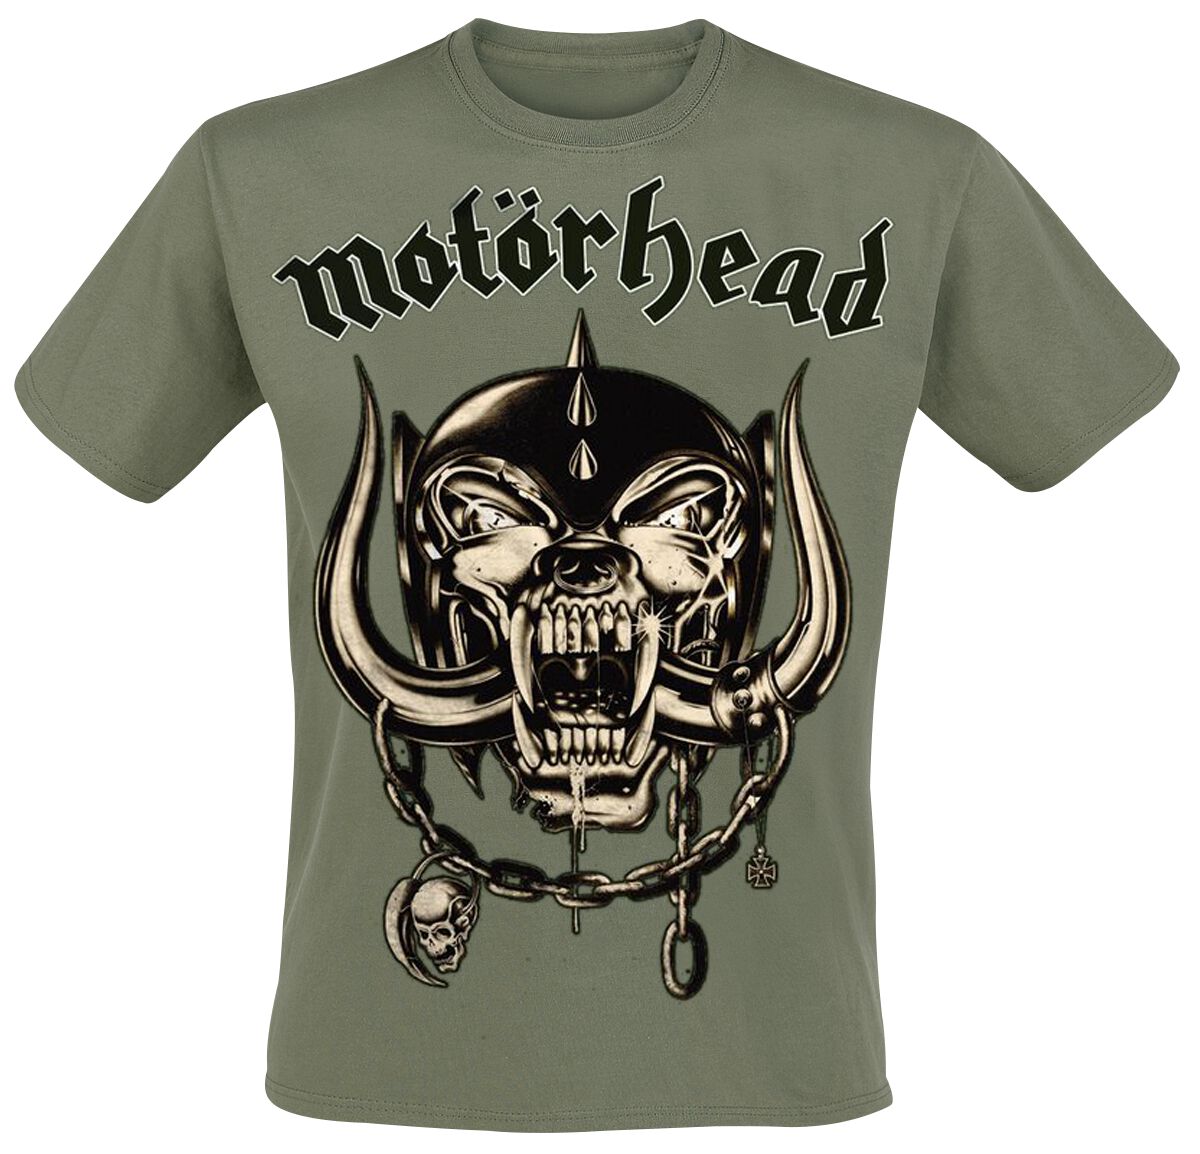 Motörhead T-Shirt - Army Green Warpig - S bis 3XL - für Männer - Größe 3XL - oliv  - EMP exklusives Merchandise!